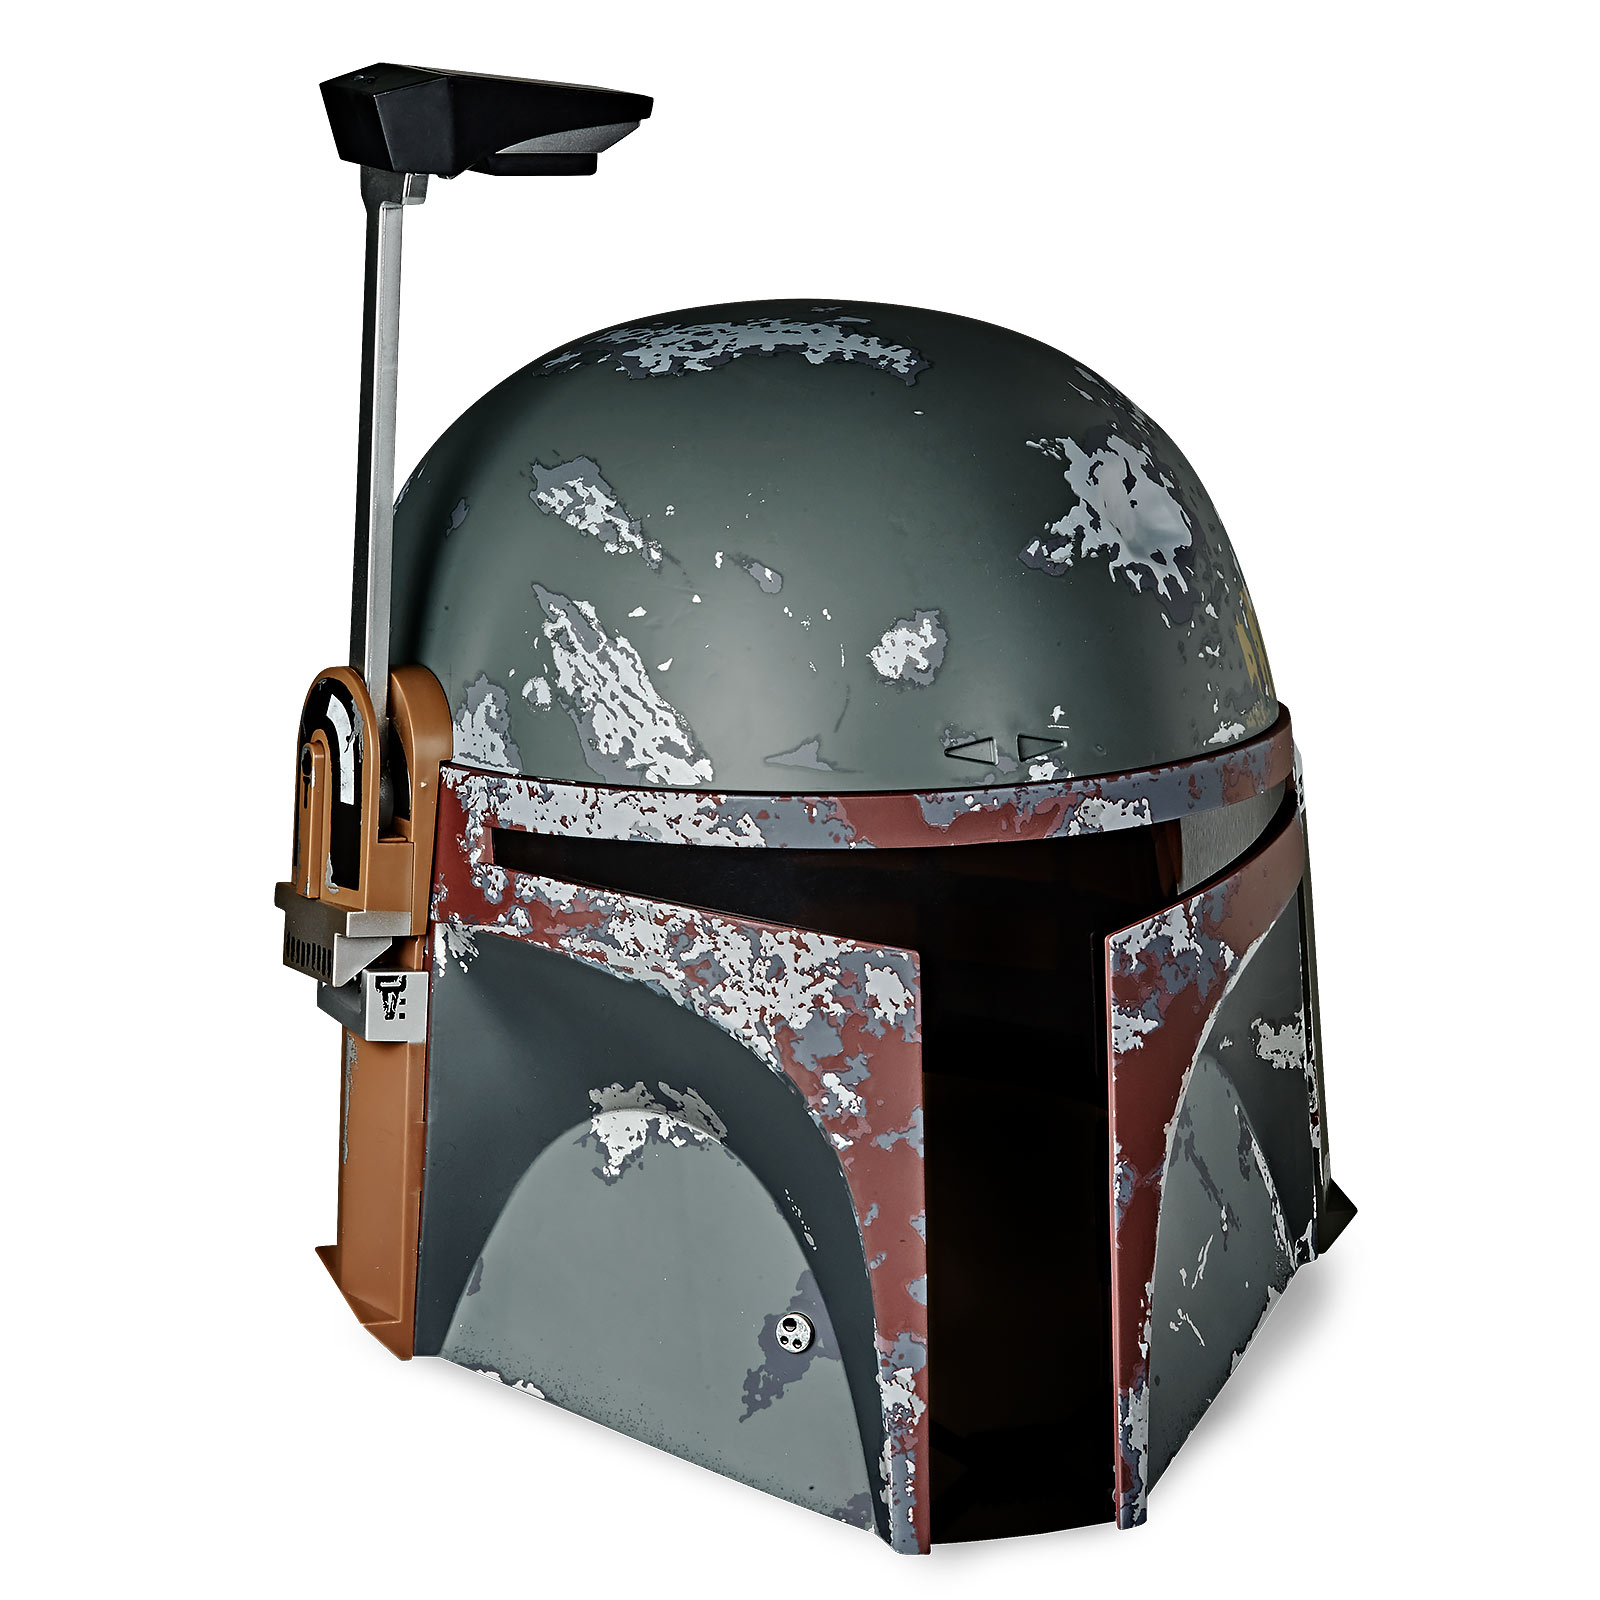 Star Wars - Boba Fett Helm Premium Replica met Lichteffecten